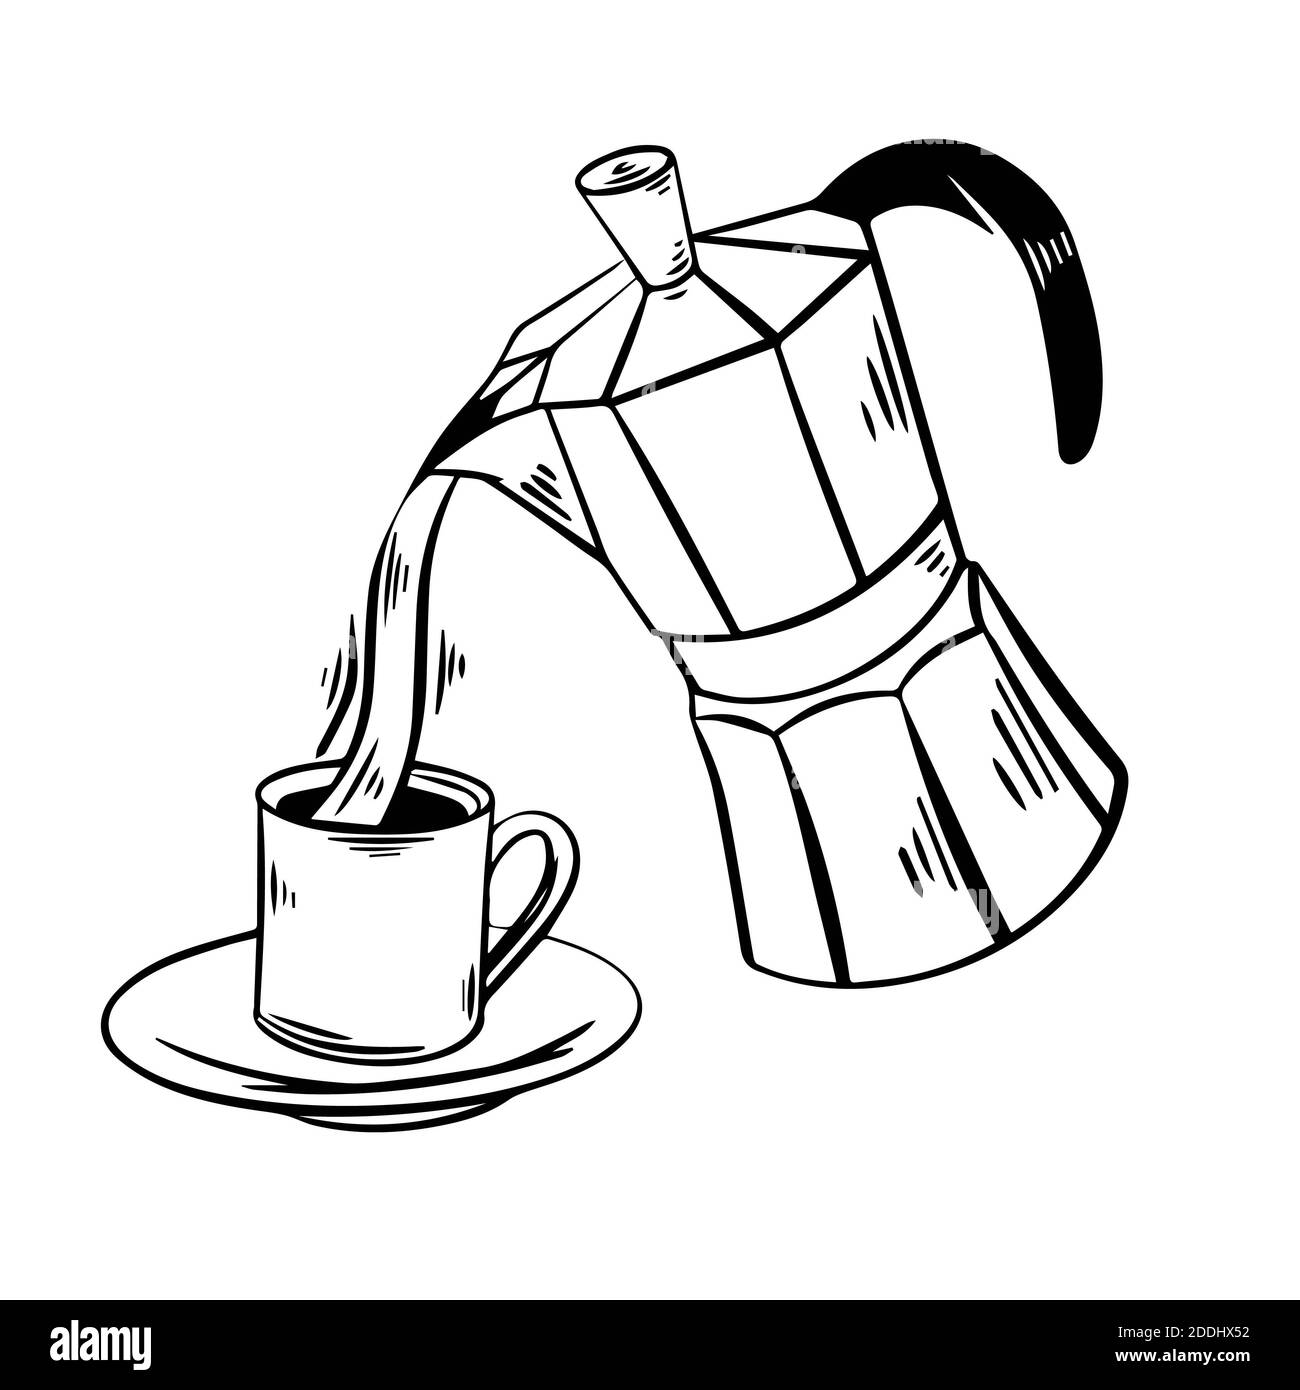 Kaffee gegossen aus einem fliegenden Moka in eine Tasse Hand gezeichnet Vektor-Illustration. Skizze Moka mit Tasse Kaffee auf weißem Hintergrund. Essen, Cafe, Kaffee krank Stockfoto